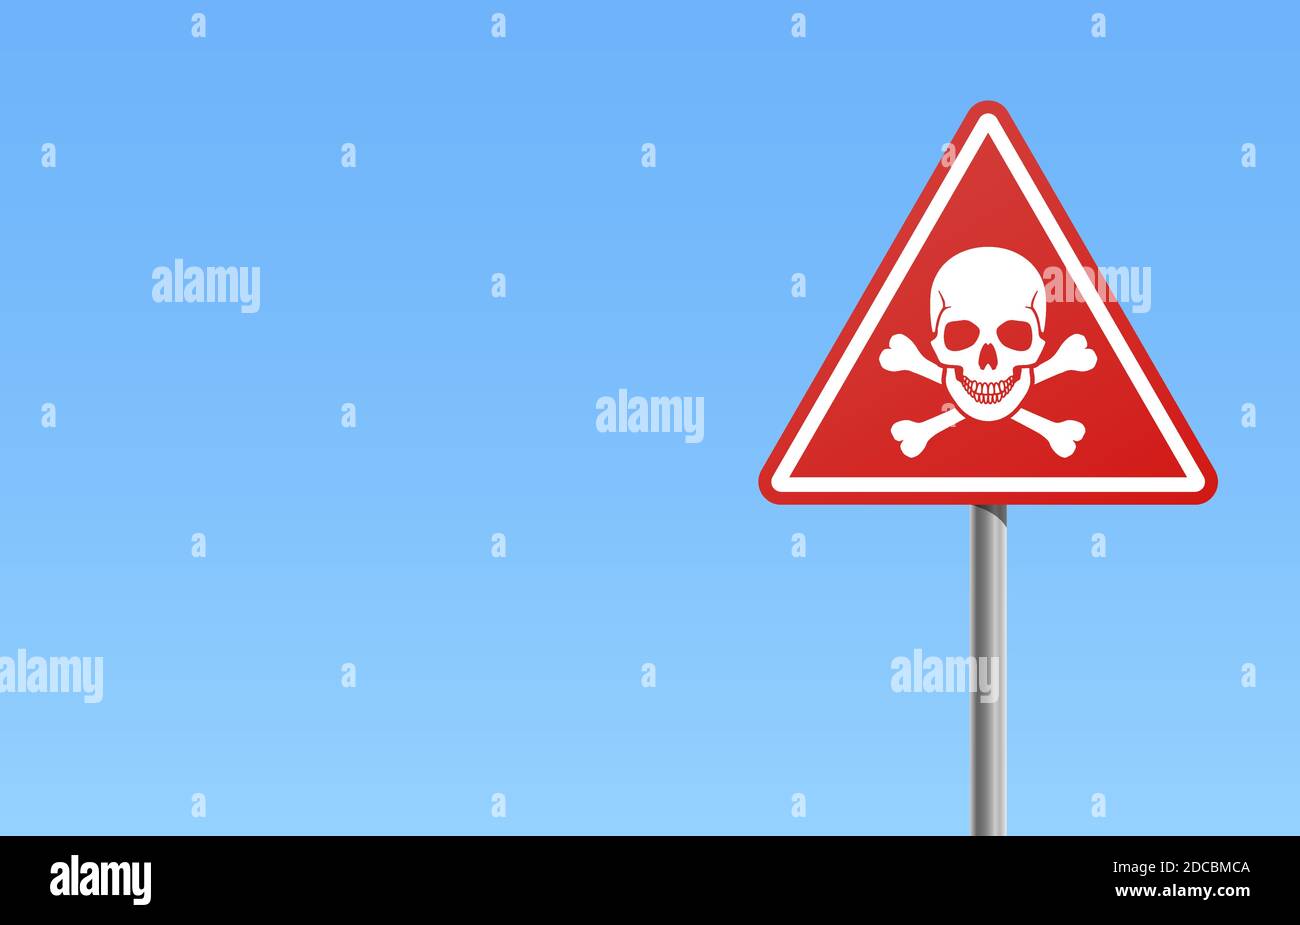 Rotes Warnschild oder Warnschild mit Totenkopf und Kreuzknochen Mit weißem Rahmen und Vektor-Illustration mit blauem Himmel Stock Vektor